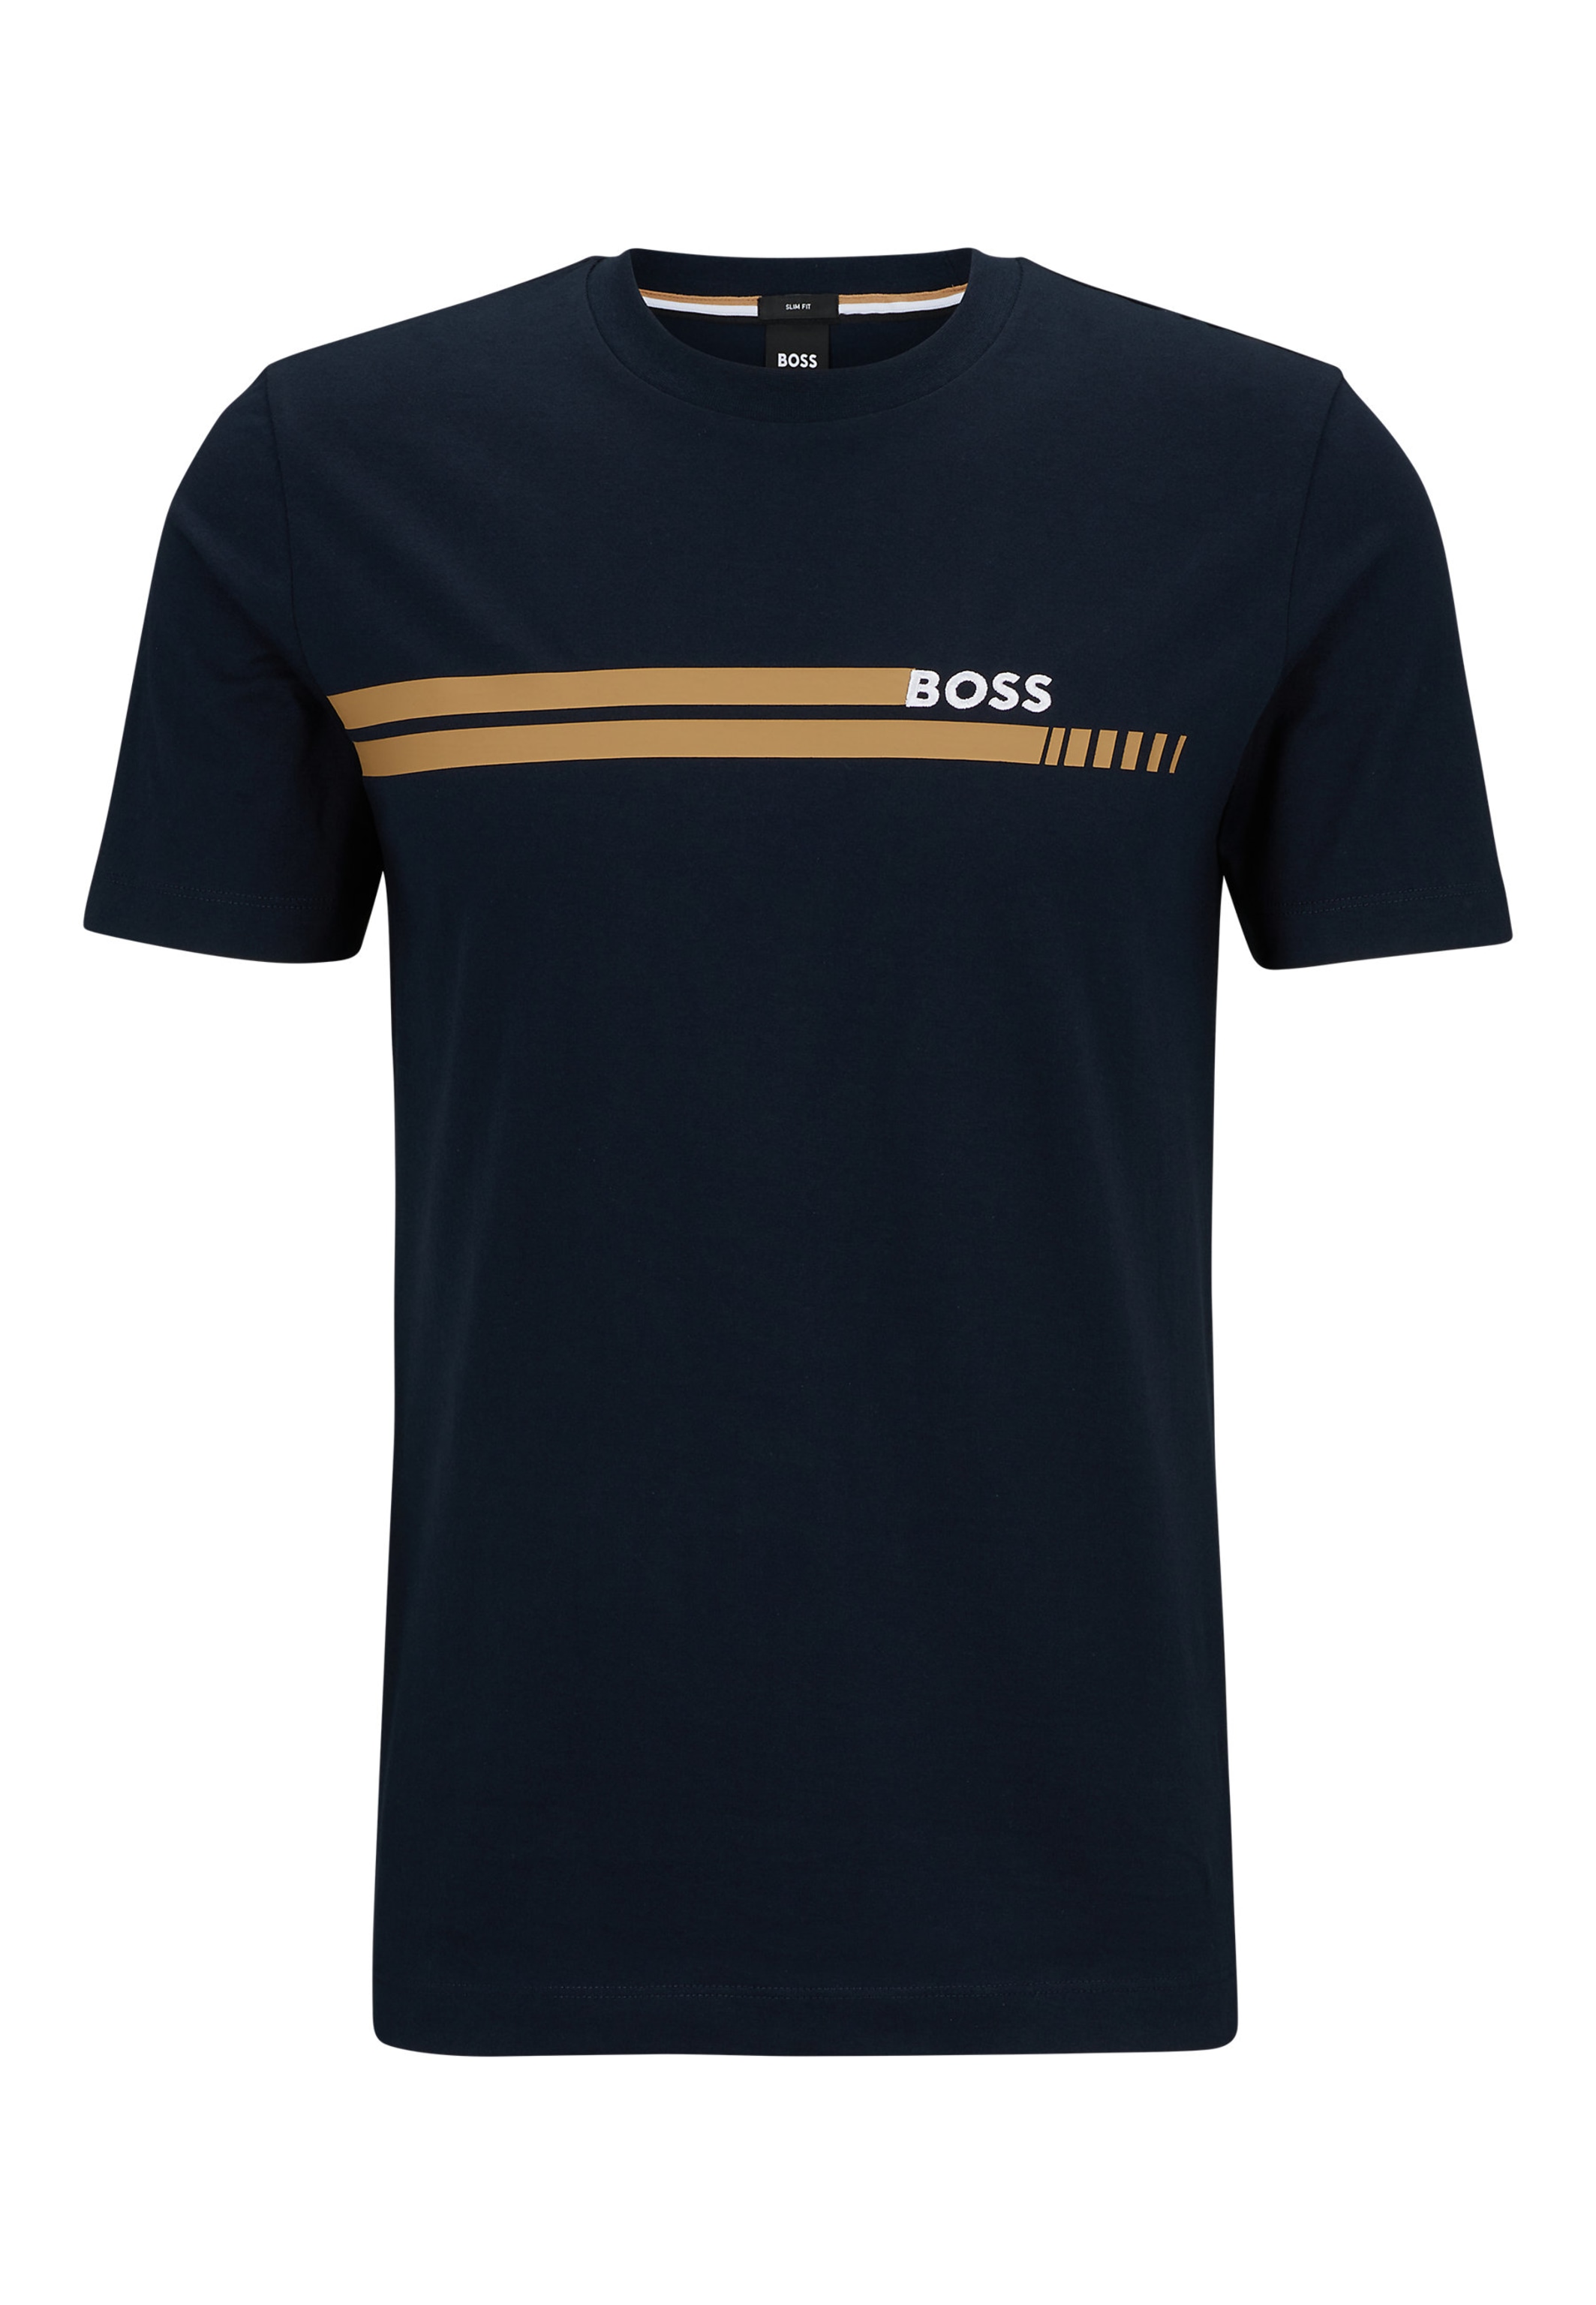 TESSLER BOSS dunkelblau Fit Slim in 197 T-Shirt